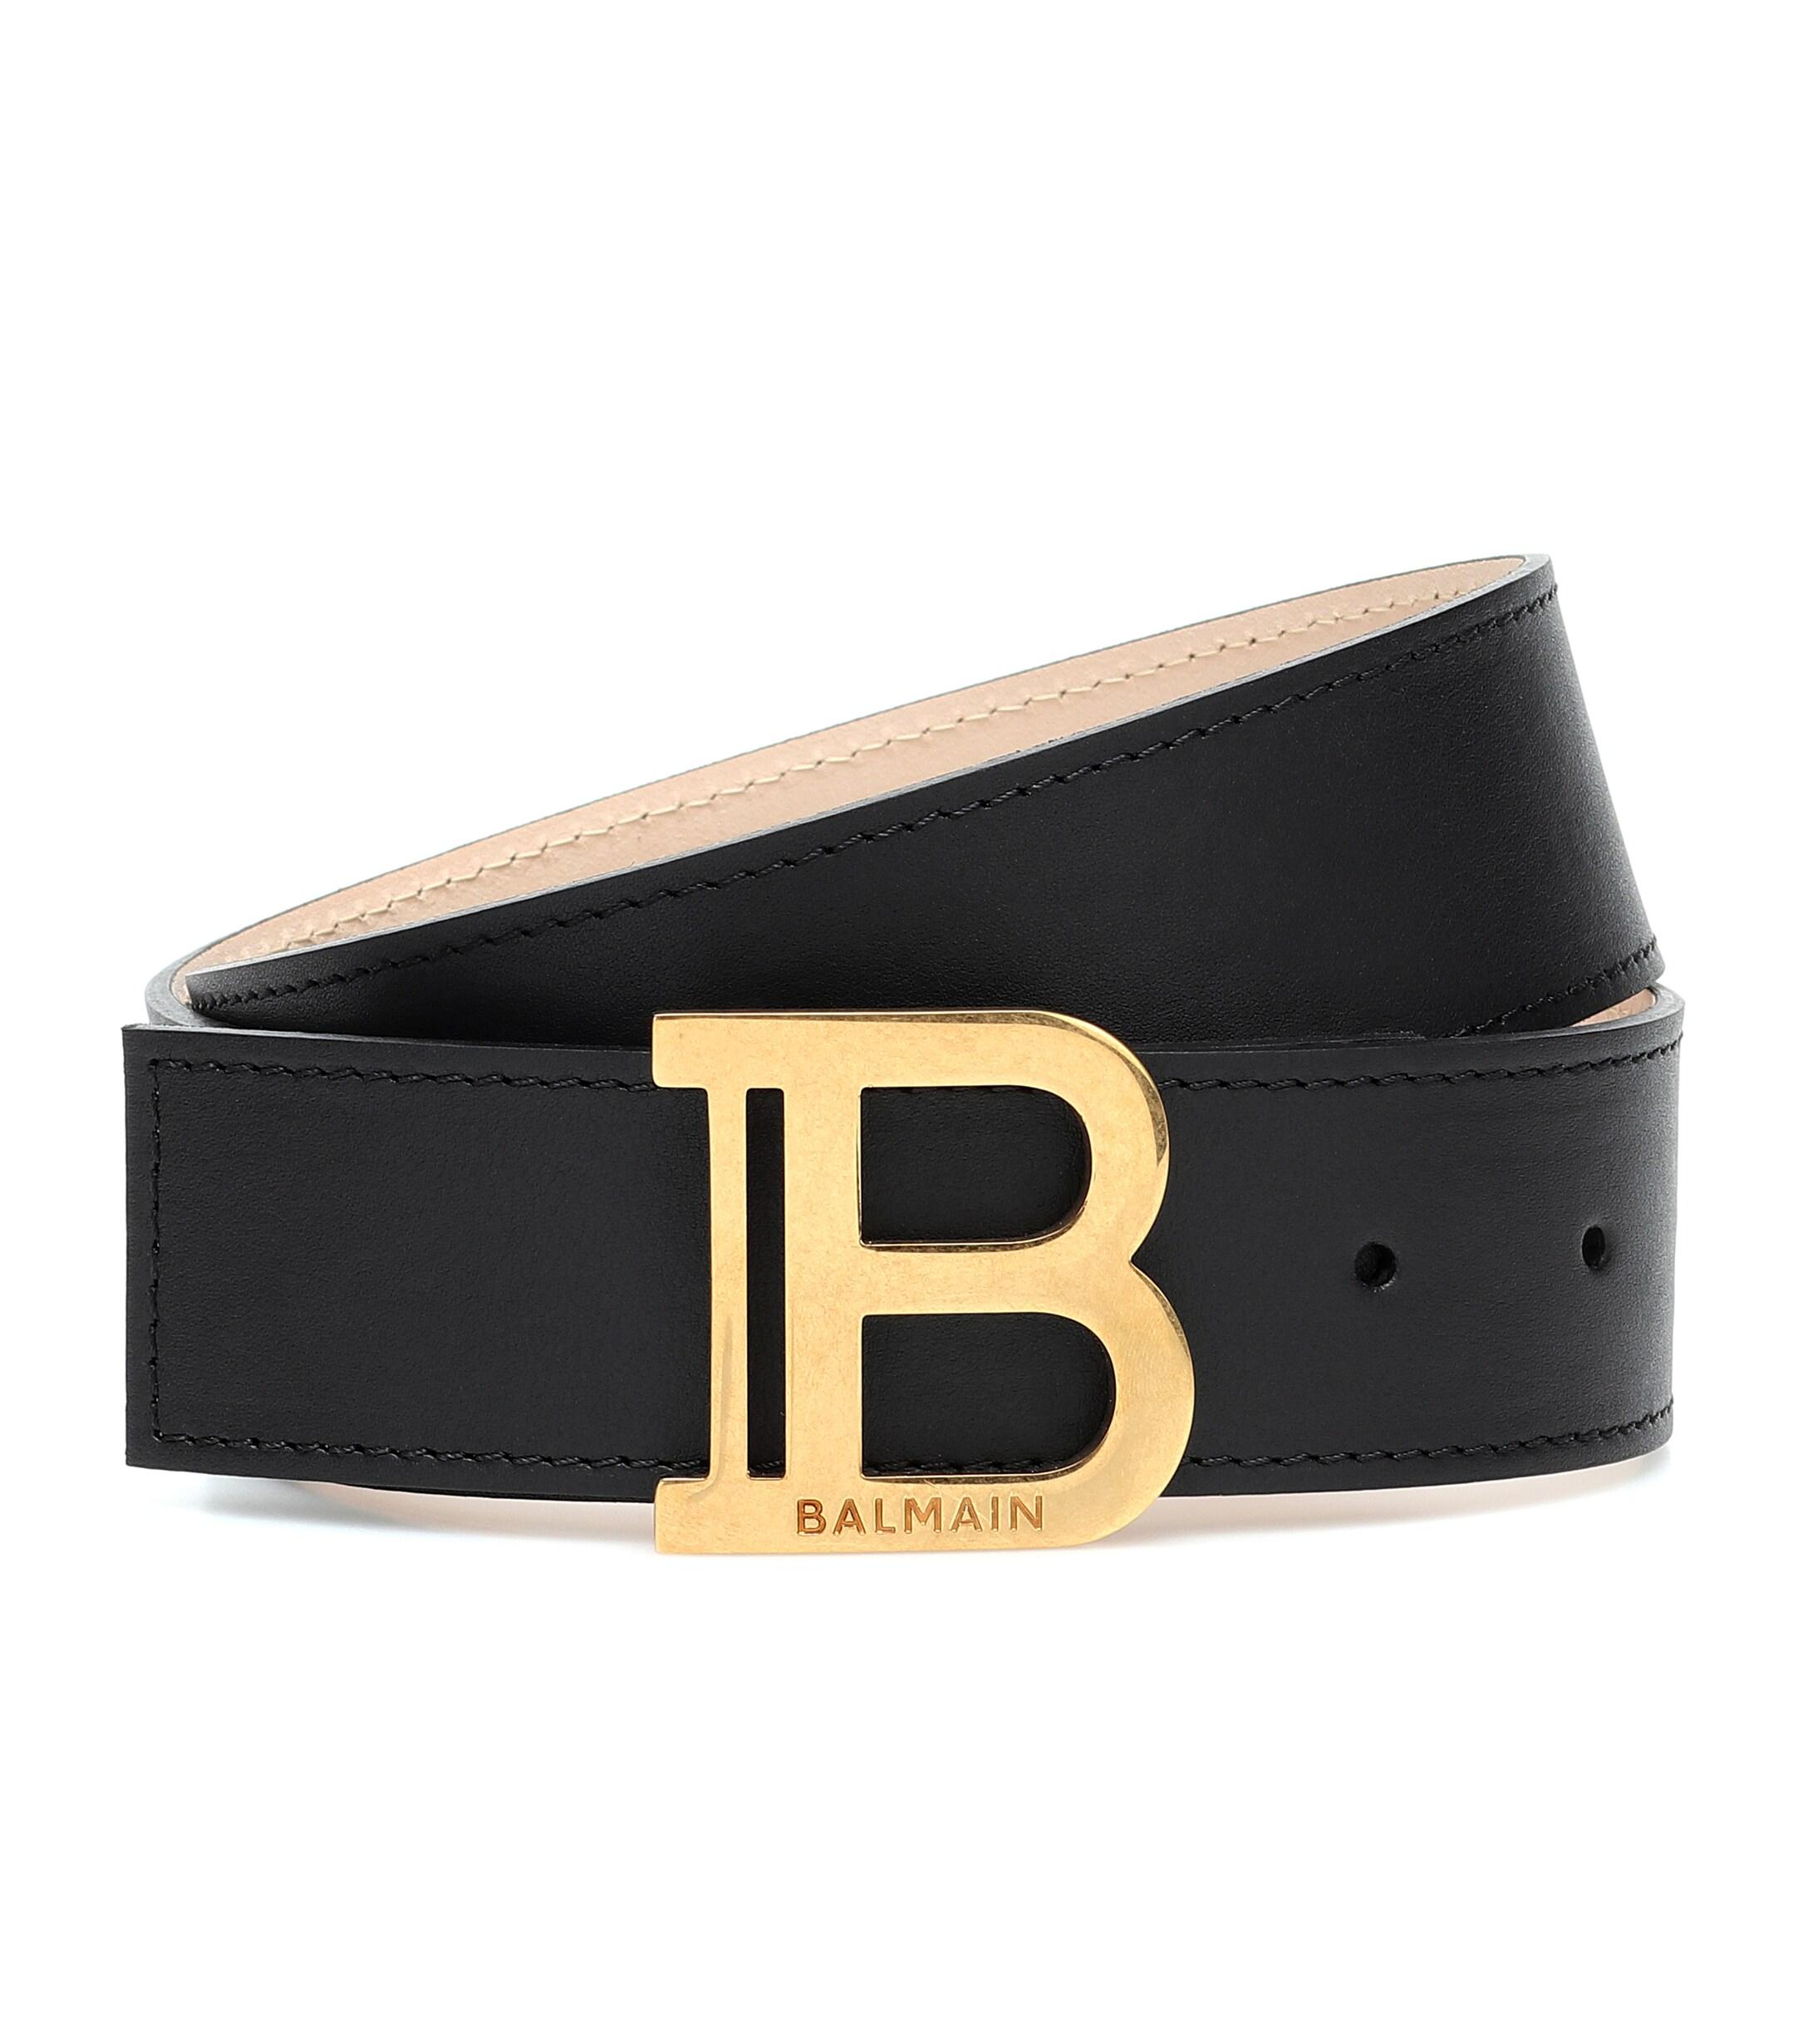 Balmain B-belt Leather Belt in Black - Lyst